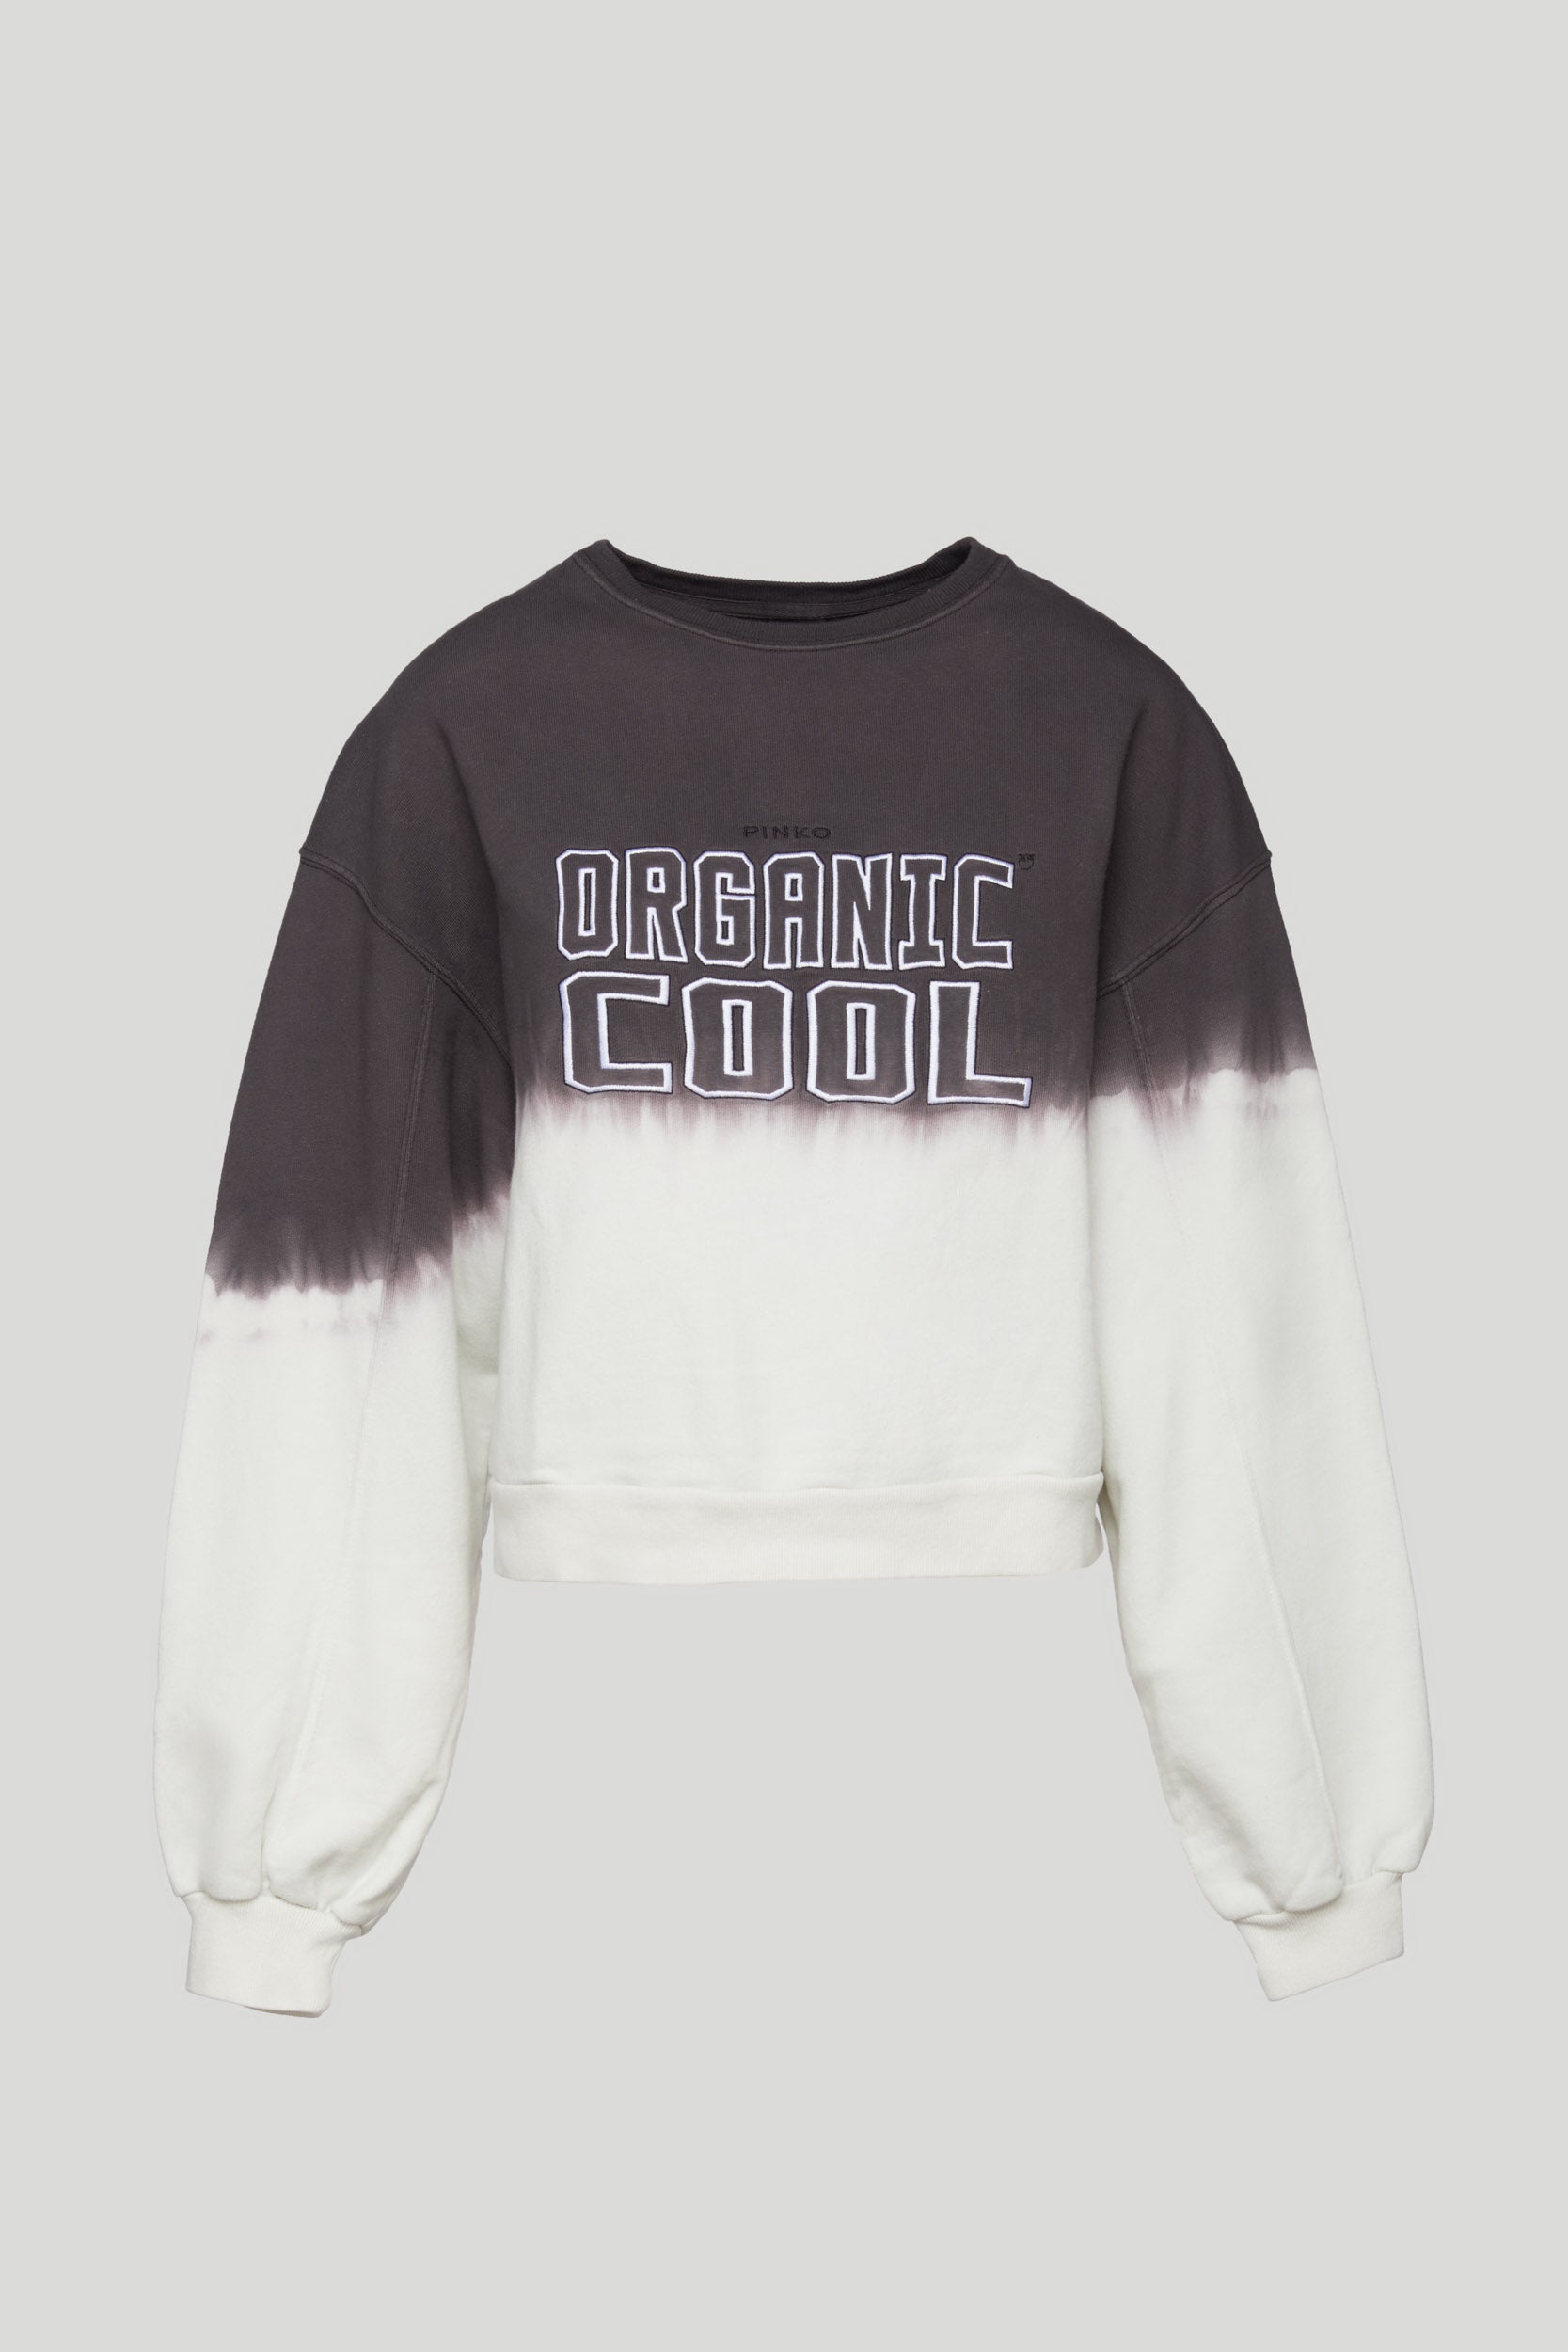 PINKO "Organic Cool" Over Sweatshirt